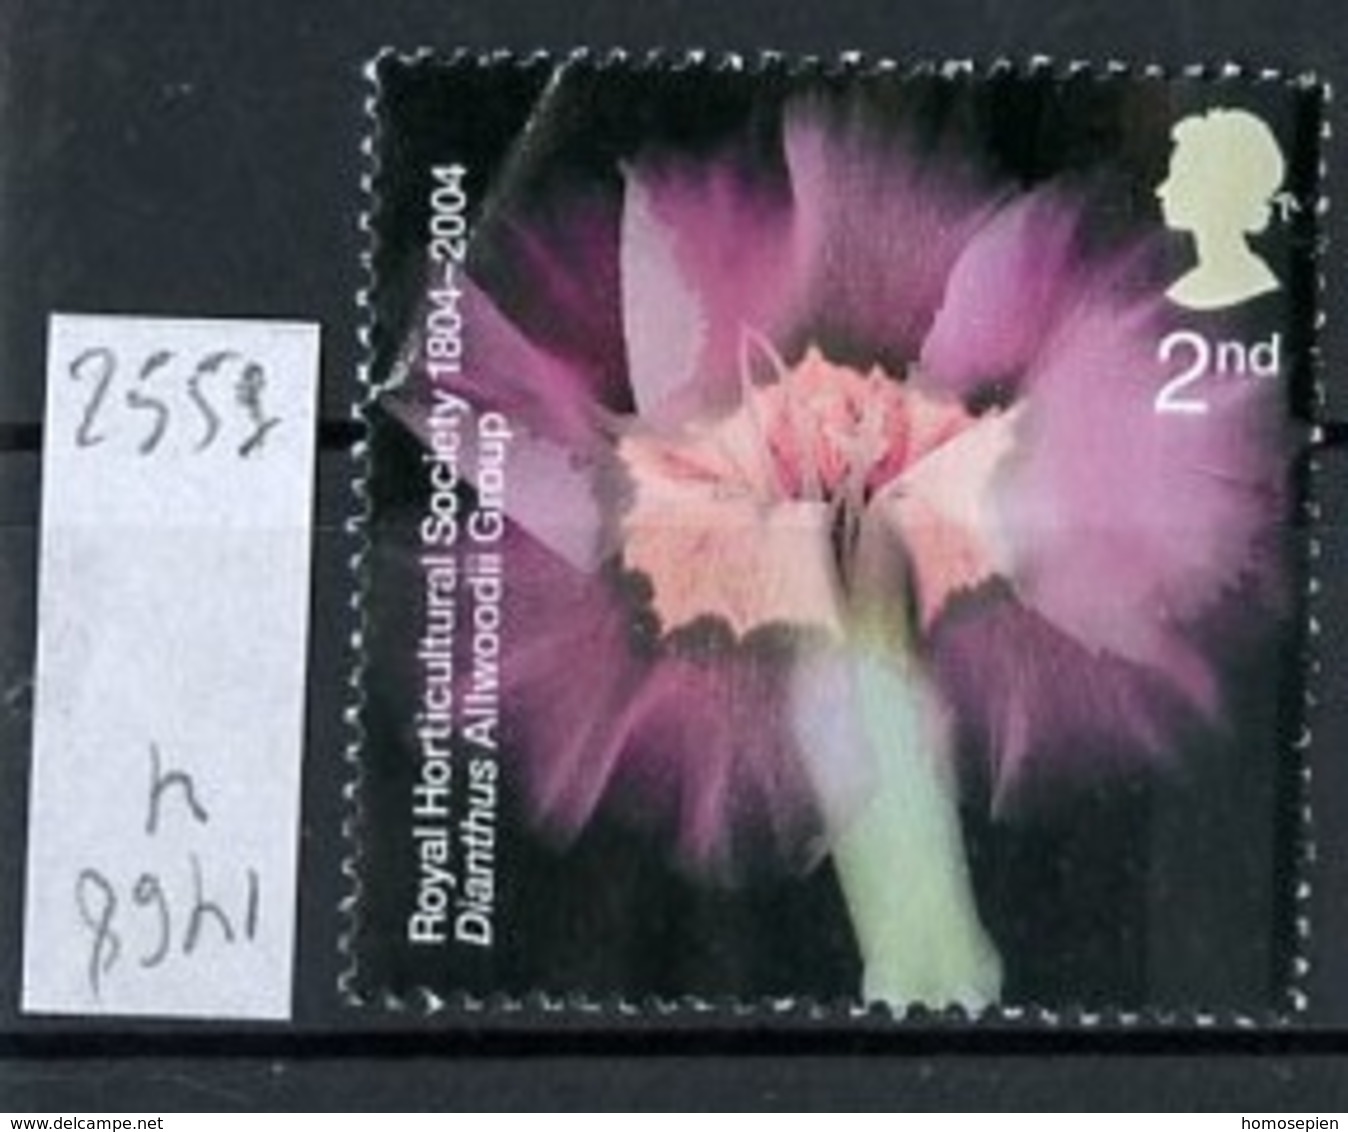 Grande Bretagne - Great Britain - Großbritannien 2004 Y&T N°2559 - Michel N°2217 Nsg - 2nd œillet - Unused Stamps